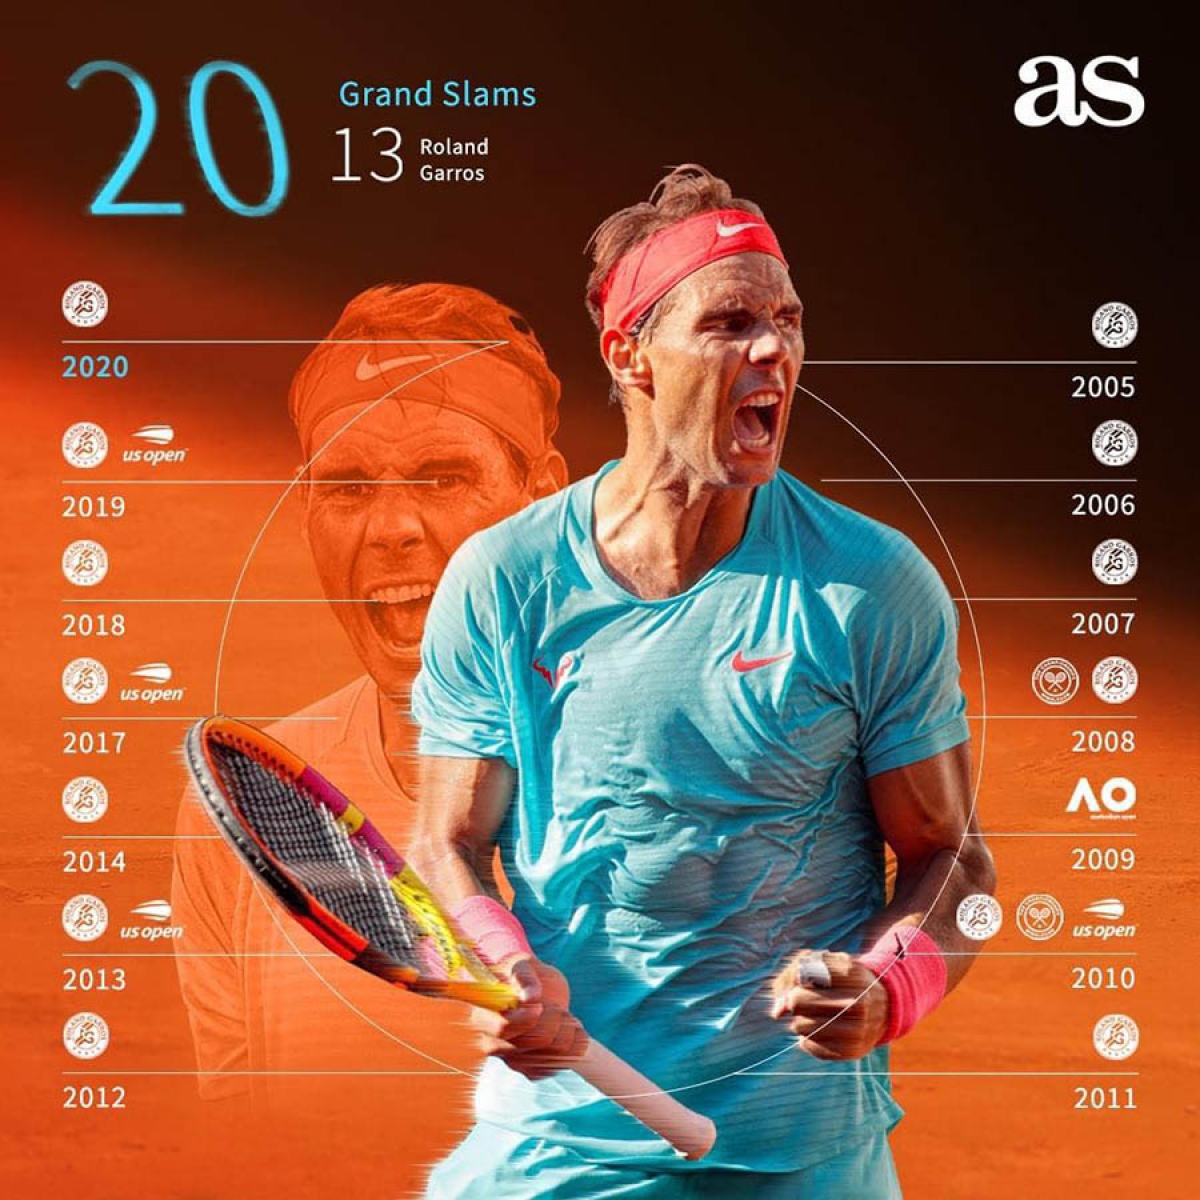 Trong số 20 Grand Slam trong sự nghiệp, có tới 13 lần Nadal giành được tại Roland Garros